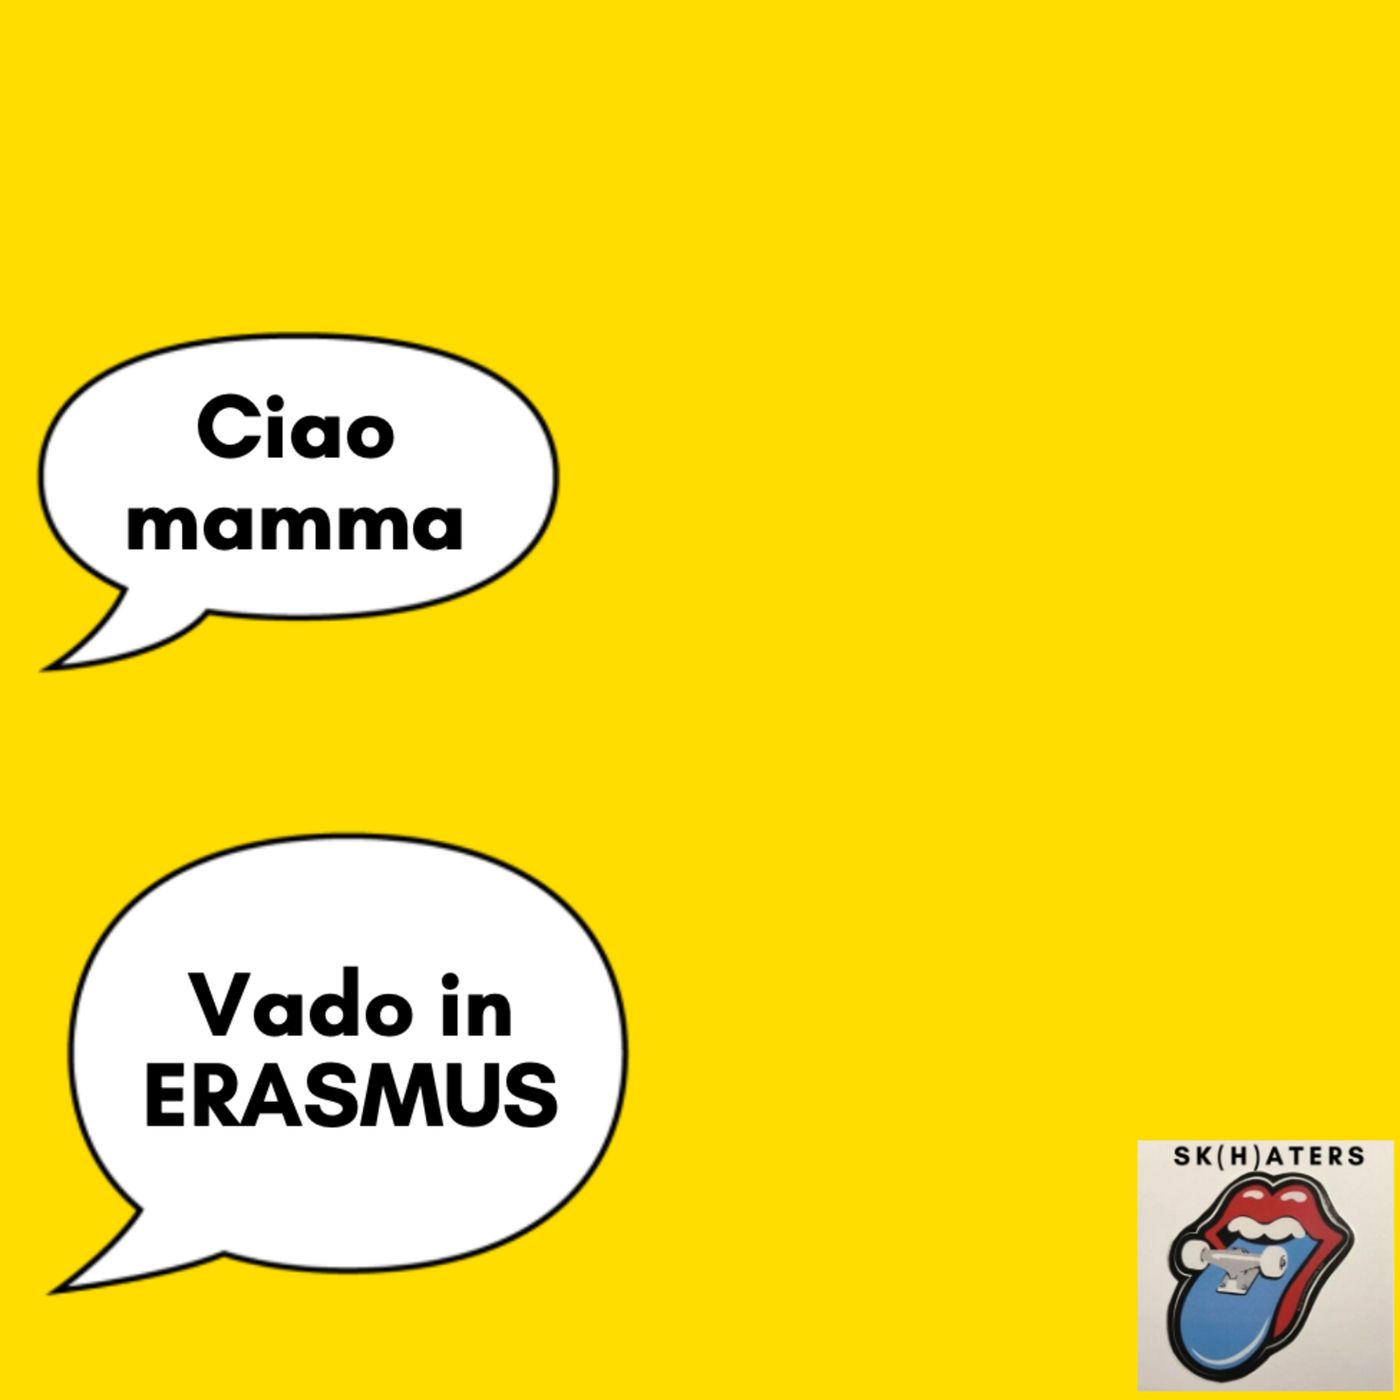 4. Ciao mamma, vado in ERASMUS!